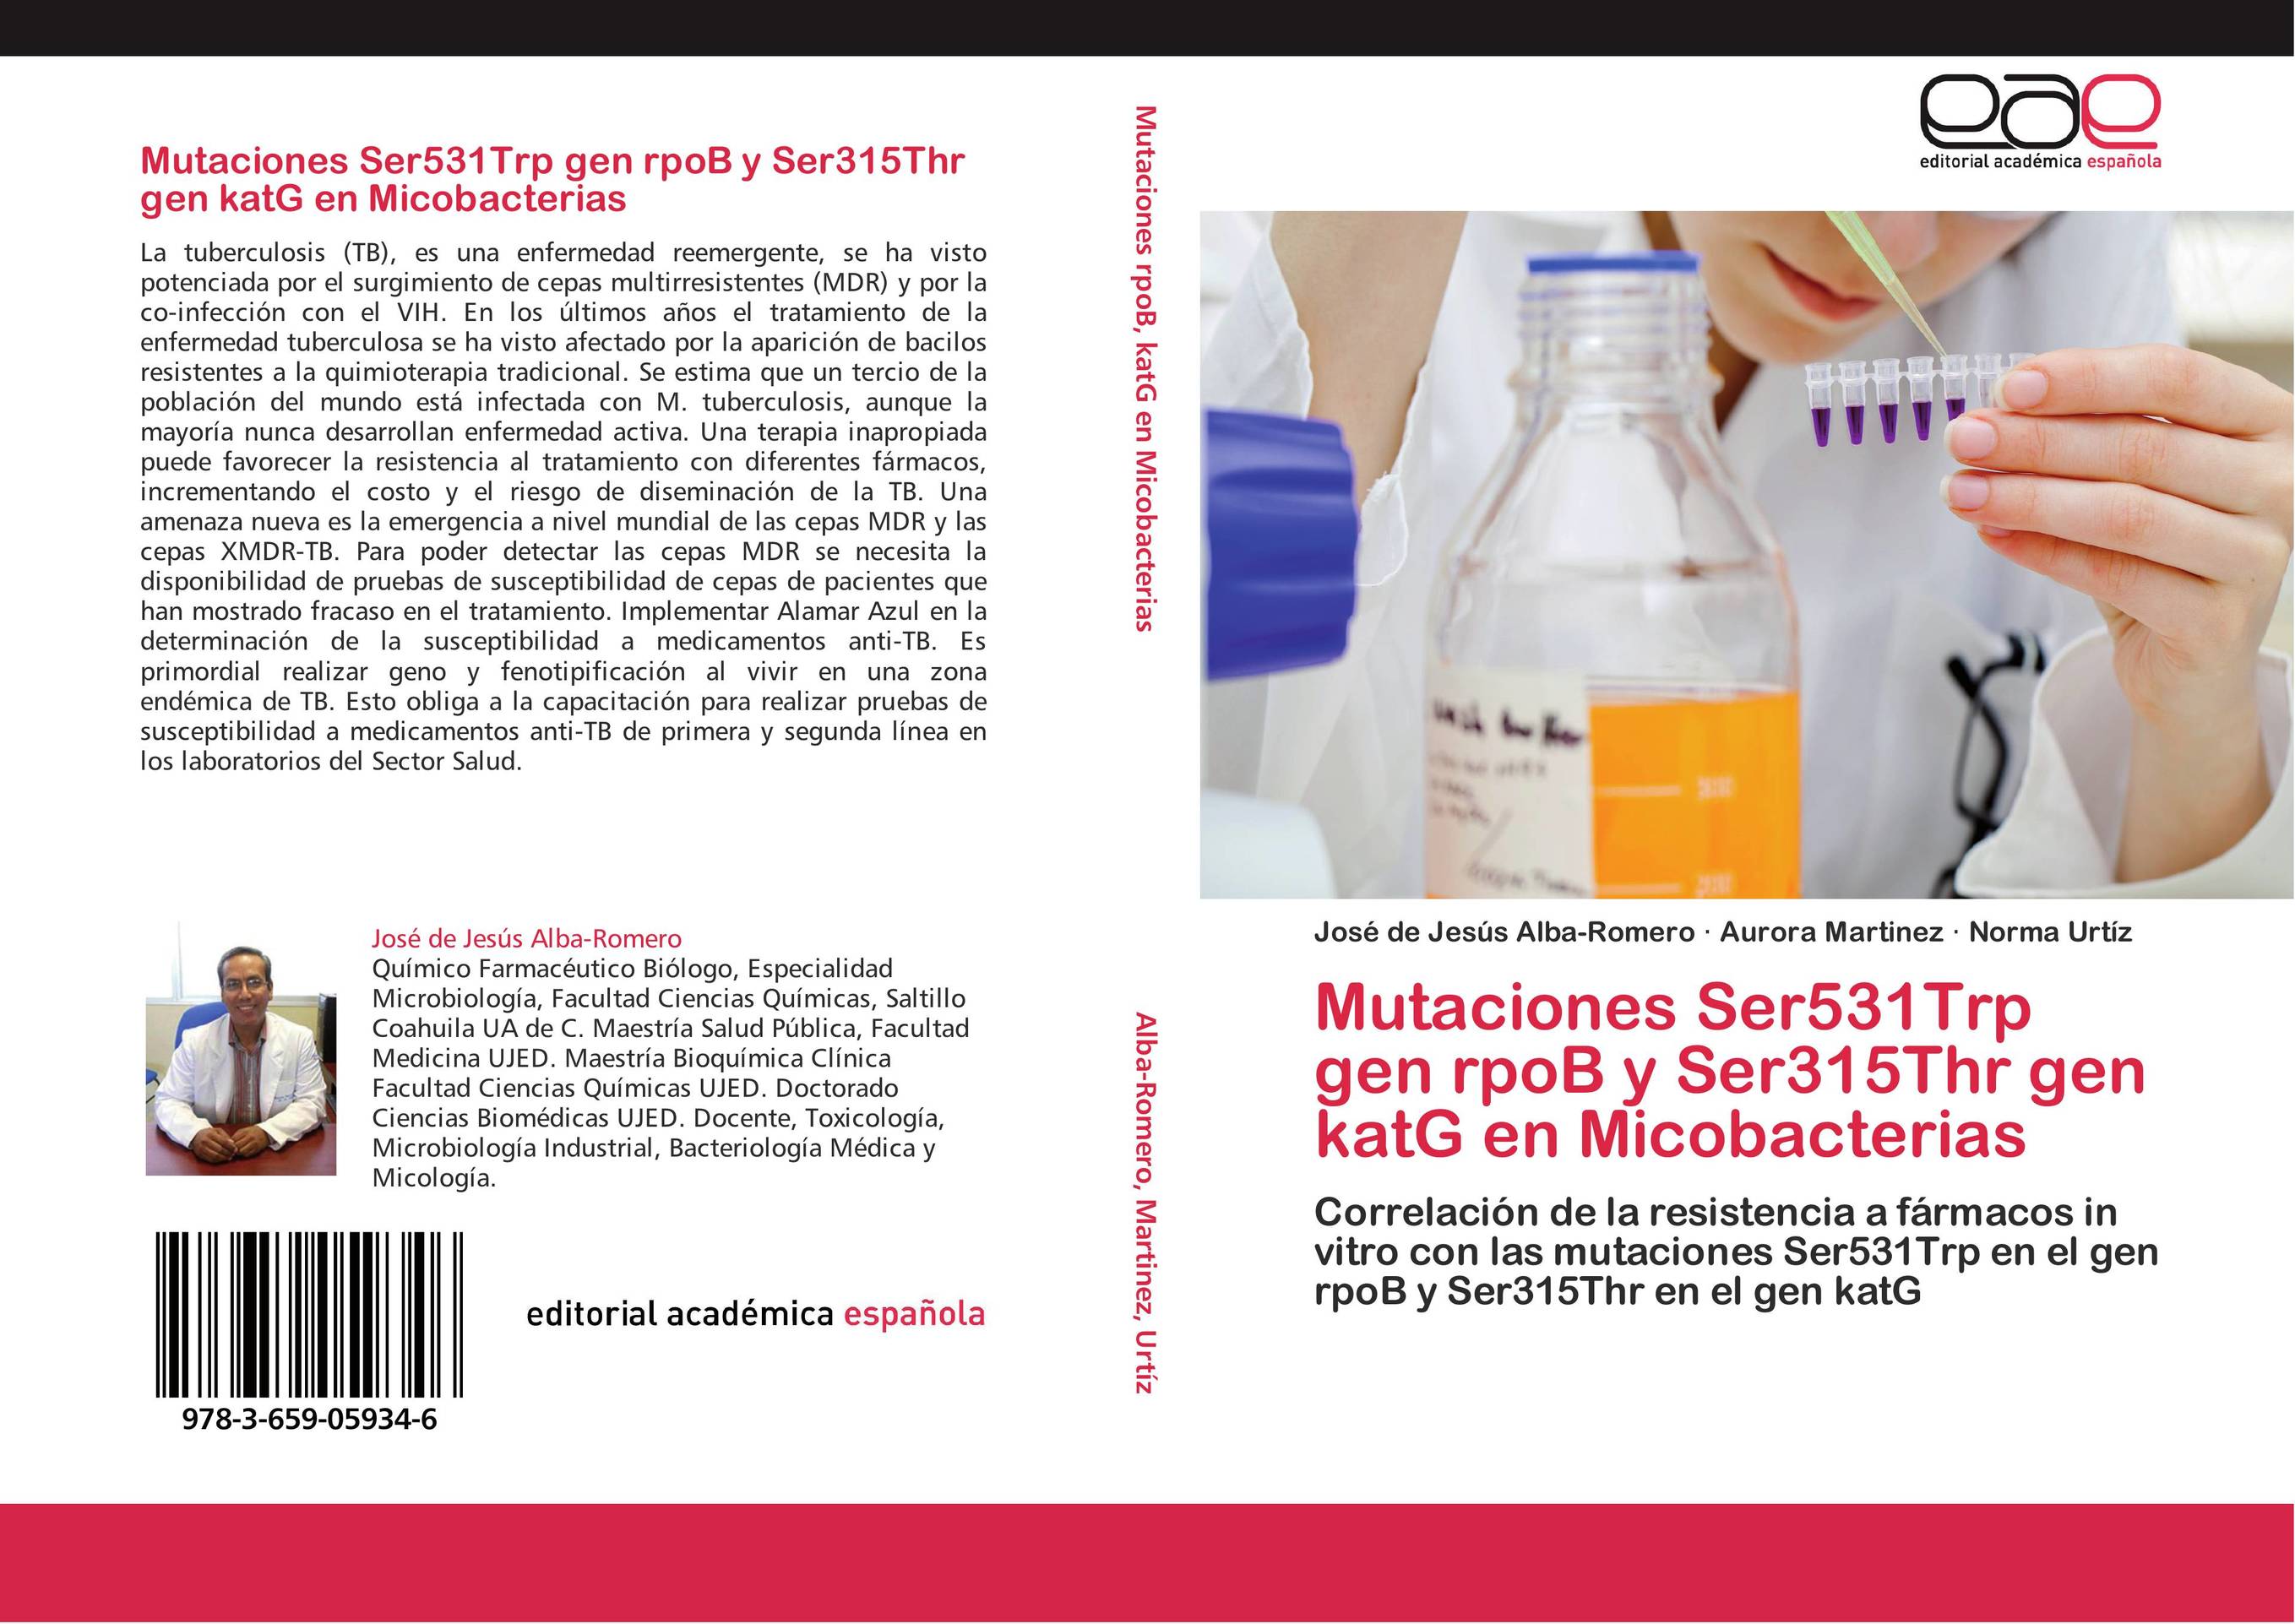 Mutaciones Ser531Trp gen rpoB y Ser315Thr gen katG  en Micobacterias